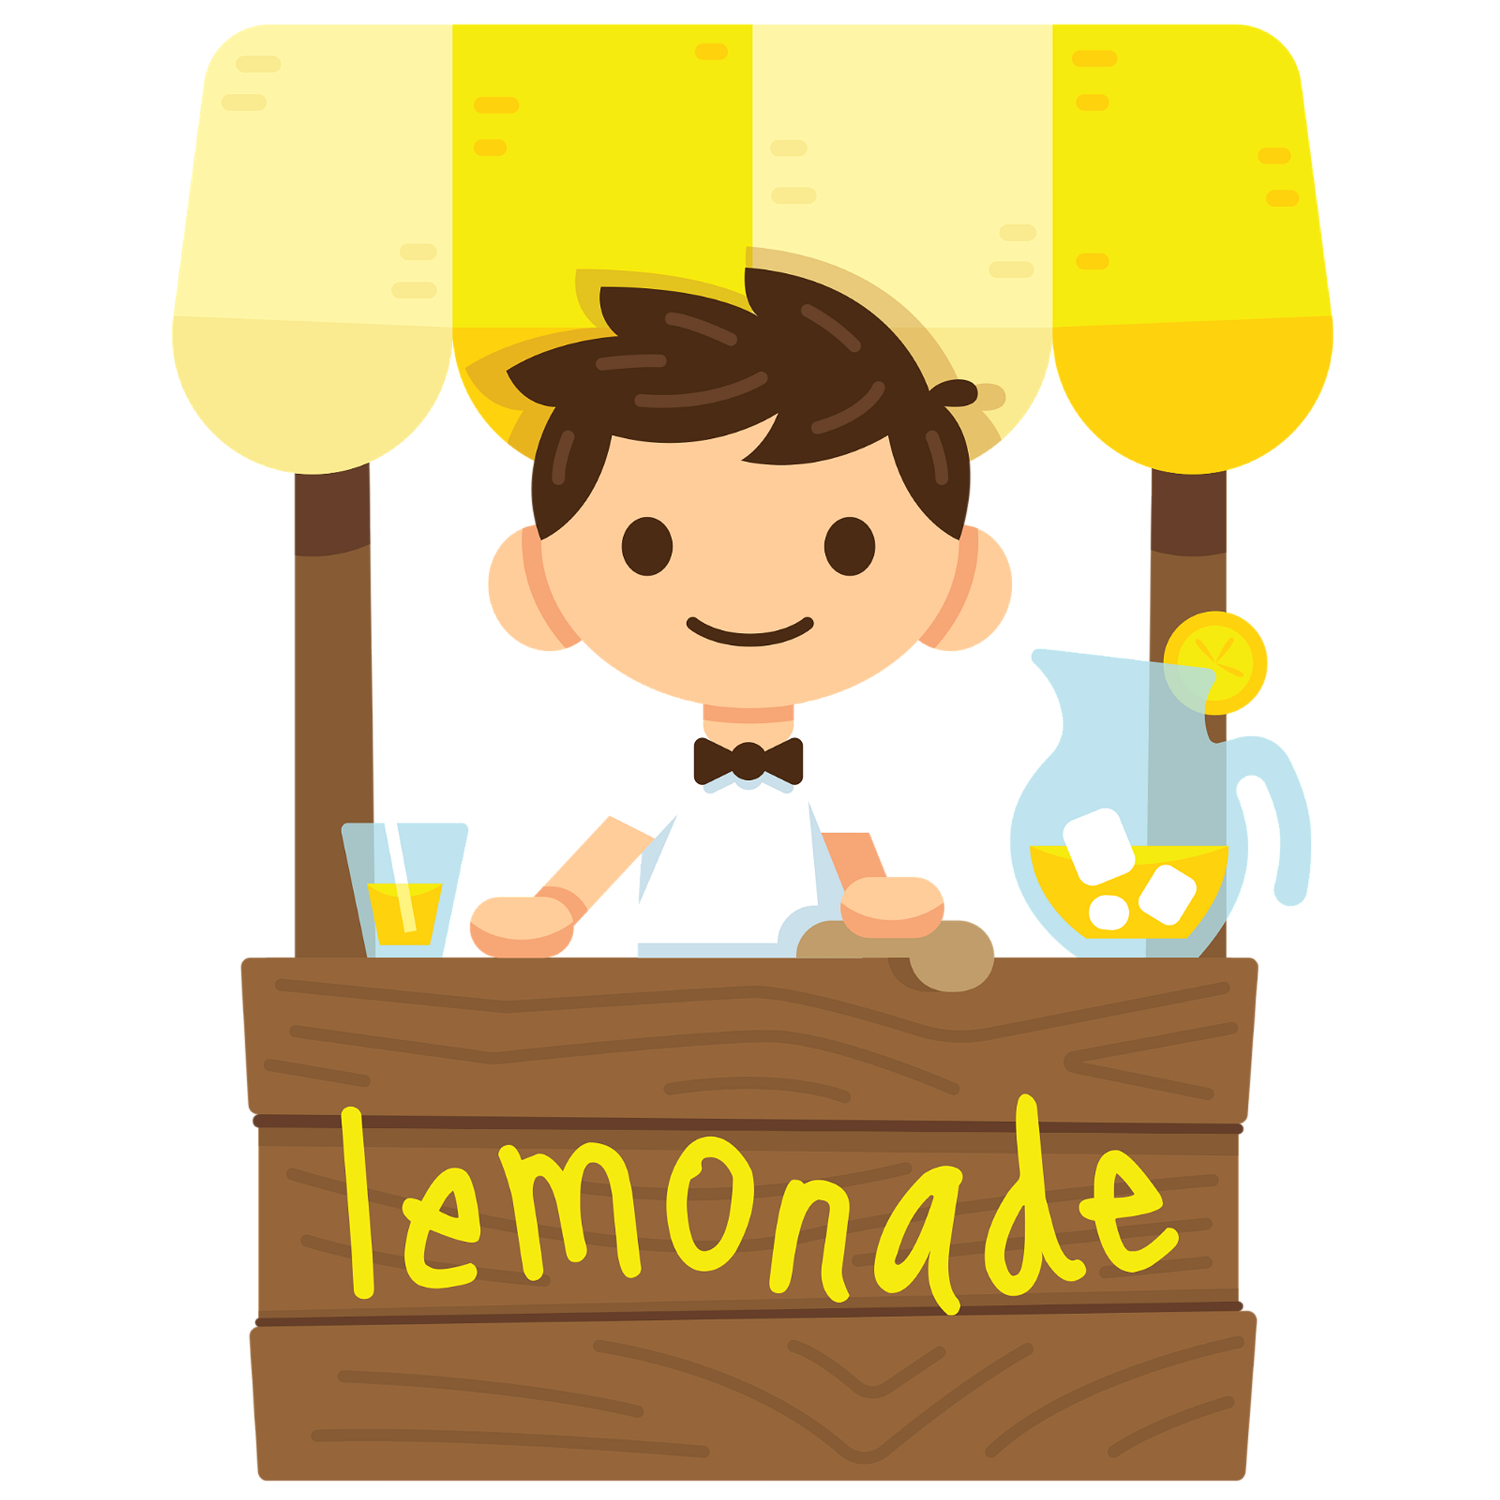 Hi, we’re Lemonade Stand